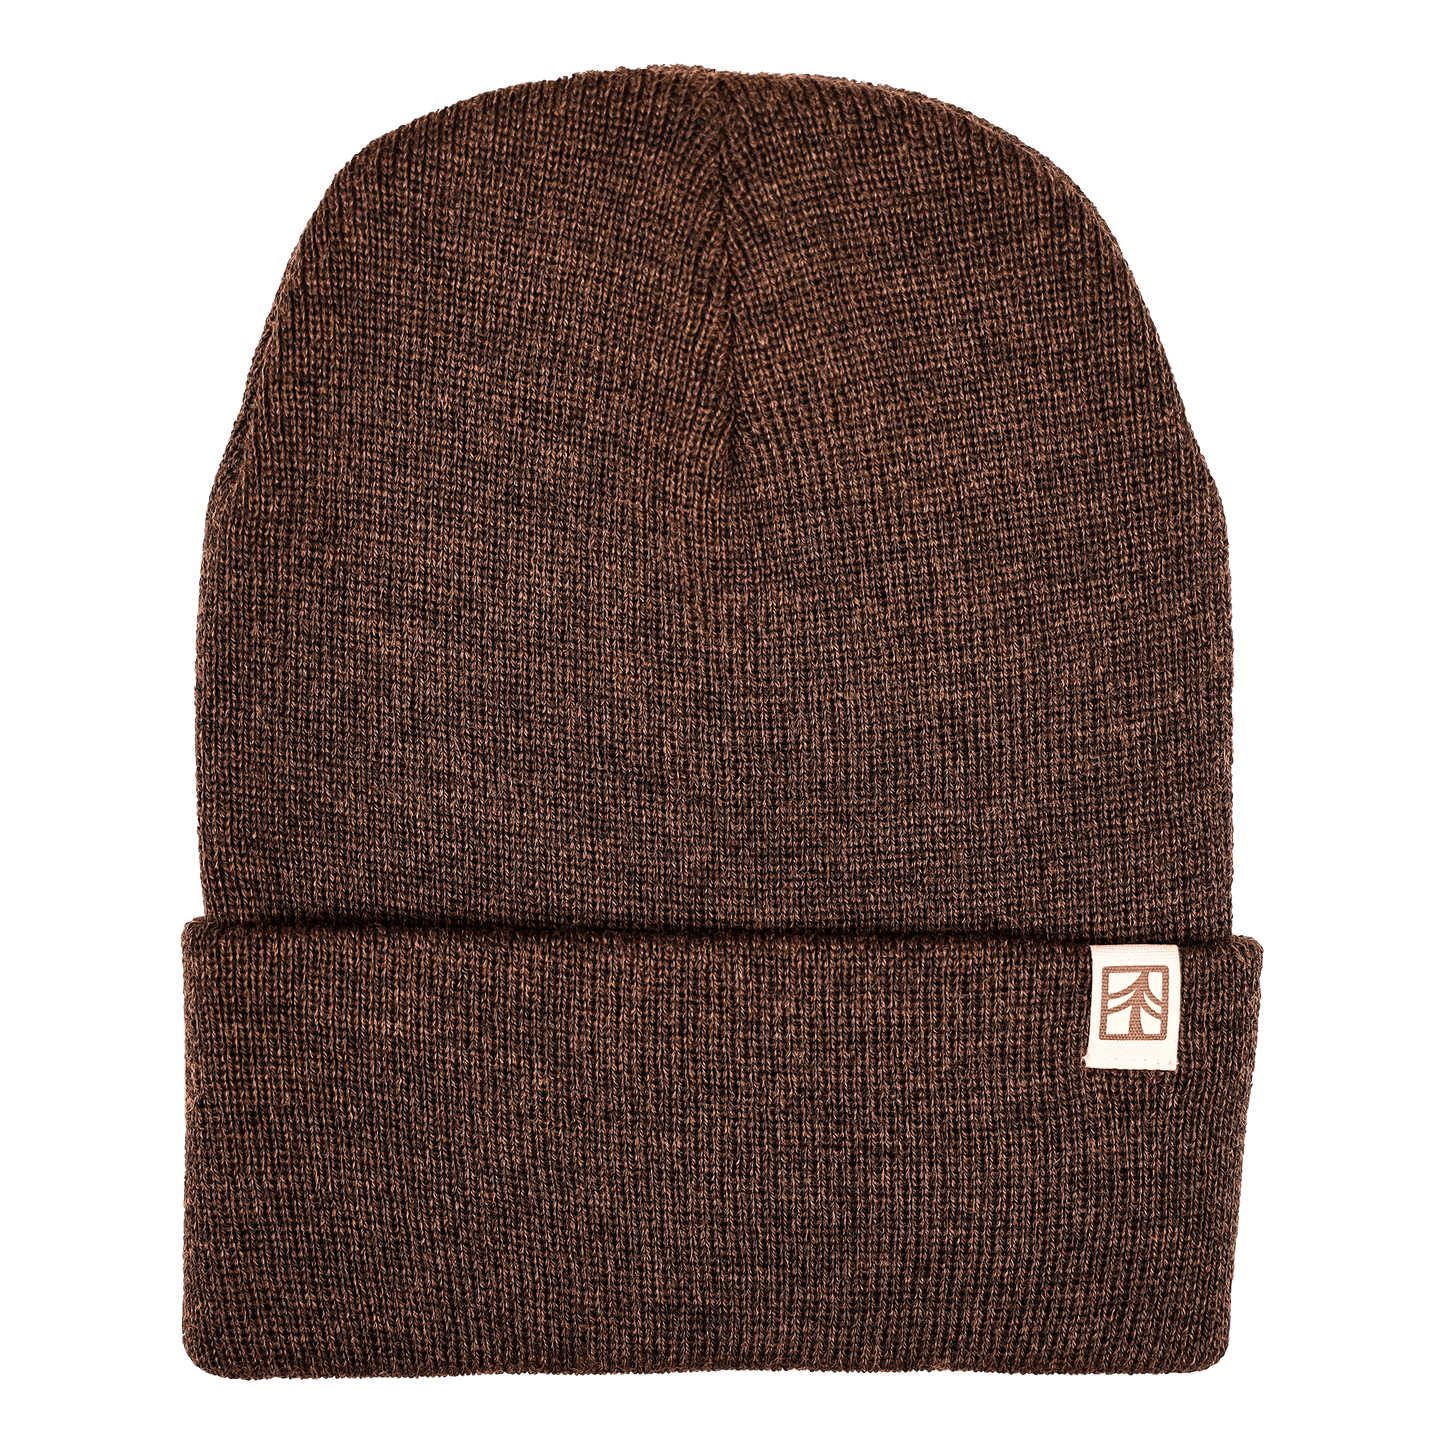 Rustek 100% Merino Wool Watch Cap | Brown